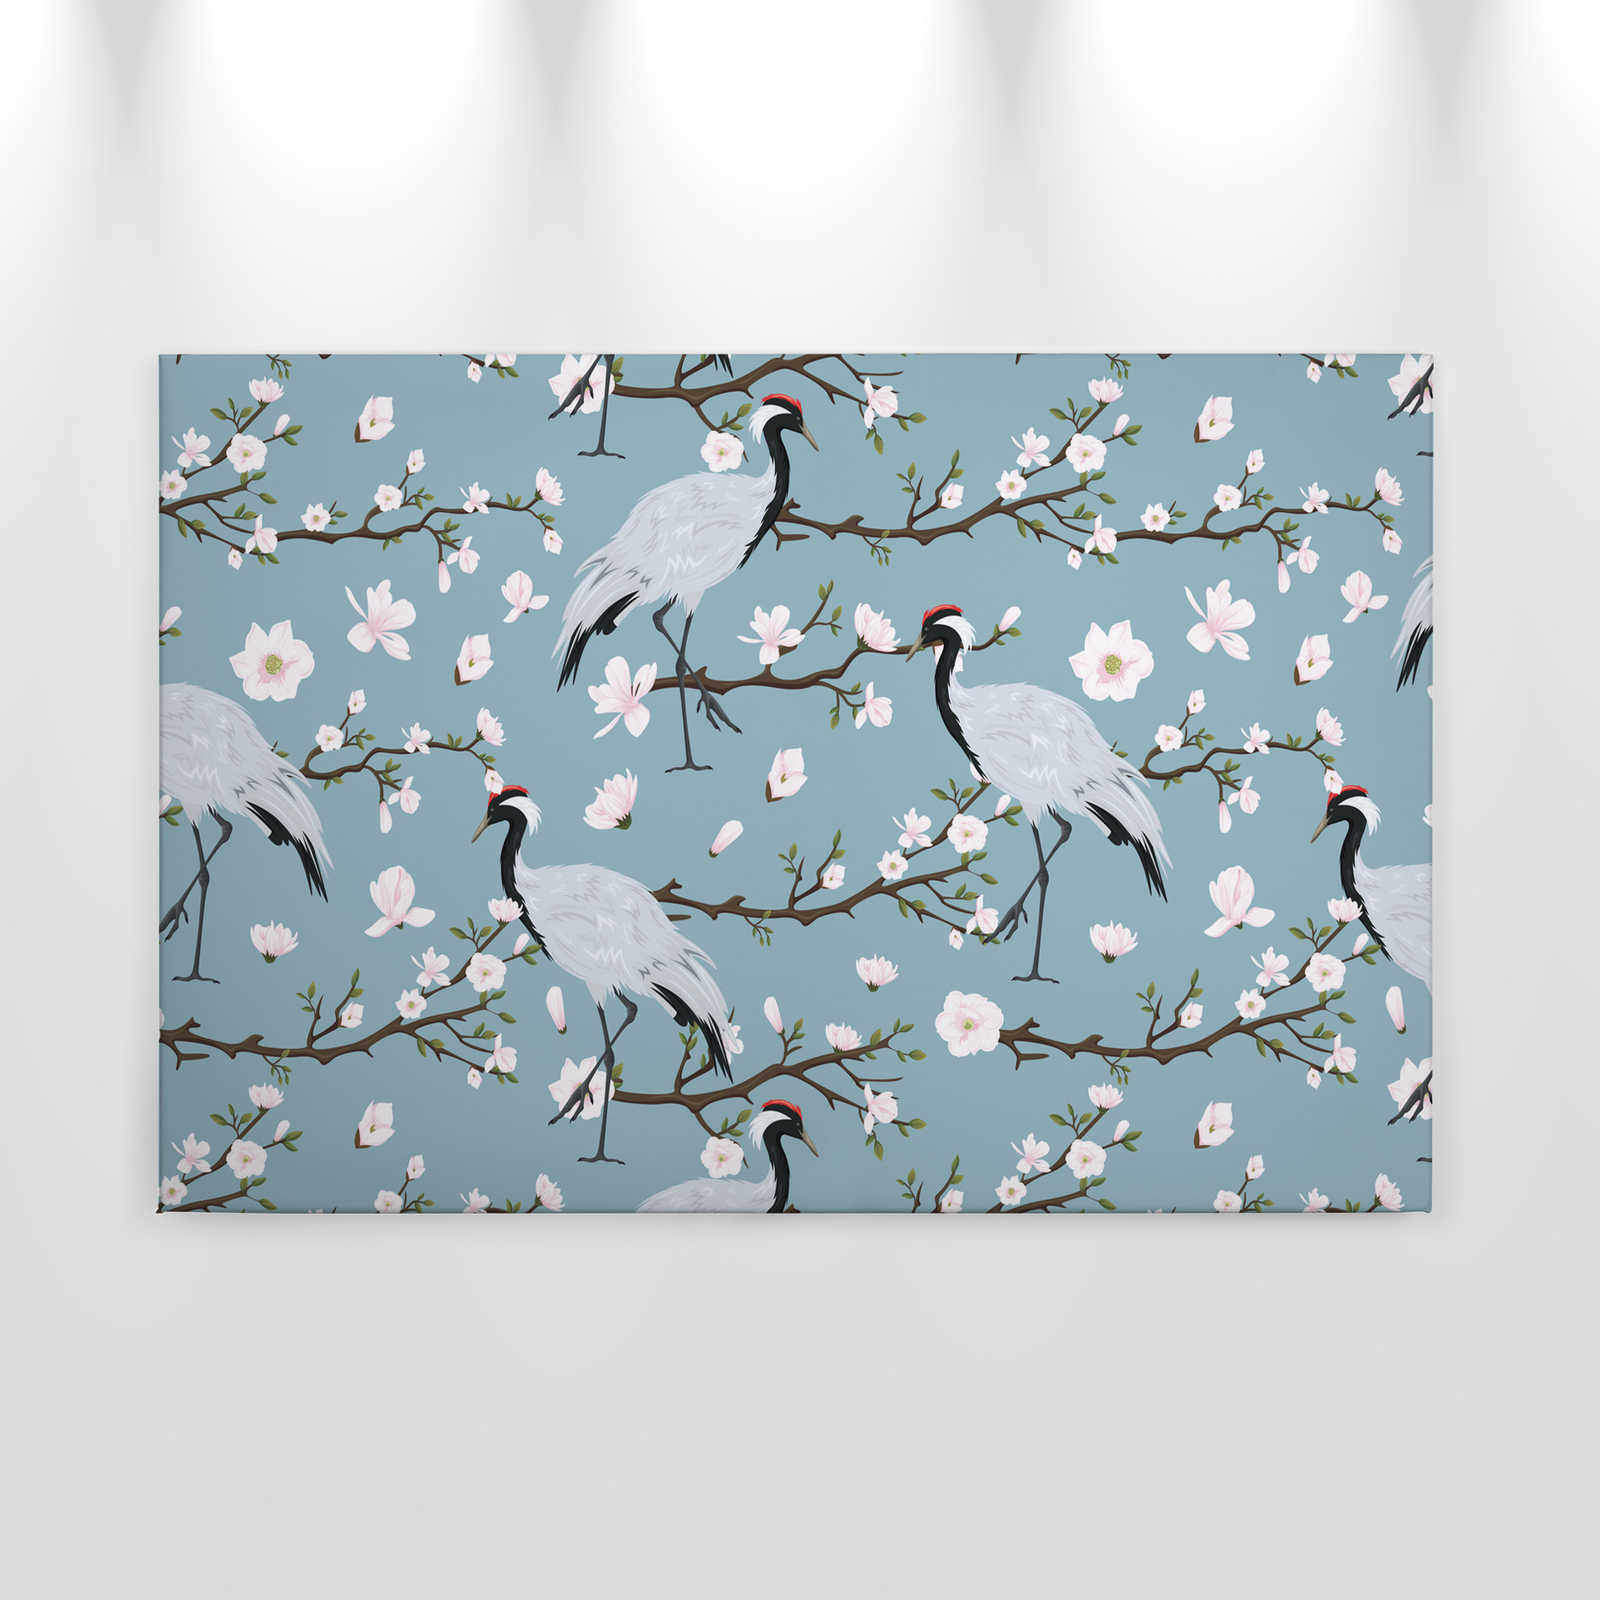             Canvas Kraanvogel Japanse Stijl - 0,90 m x 0,60 m
        